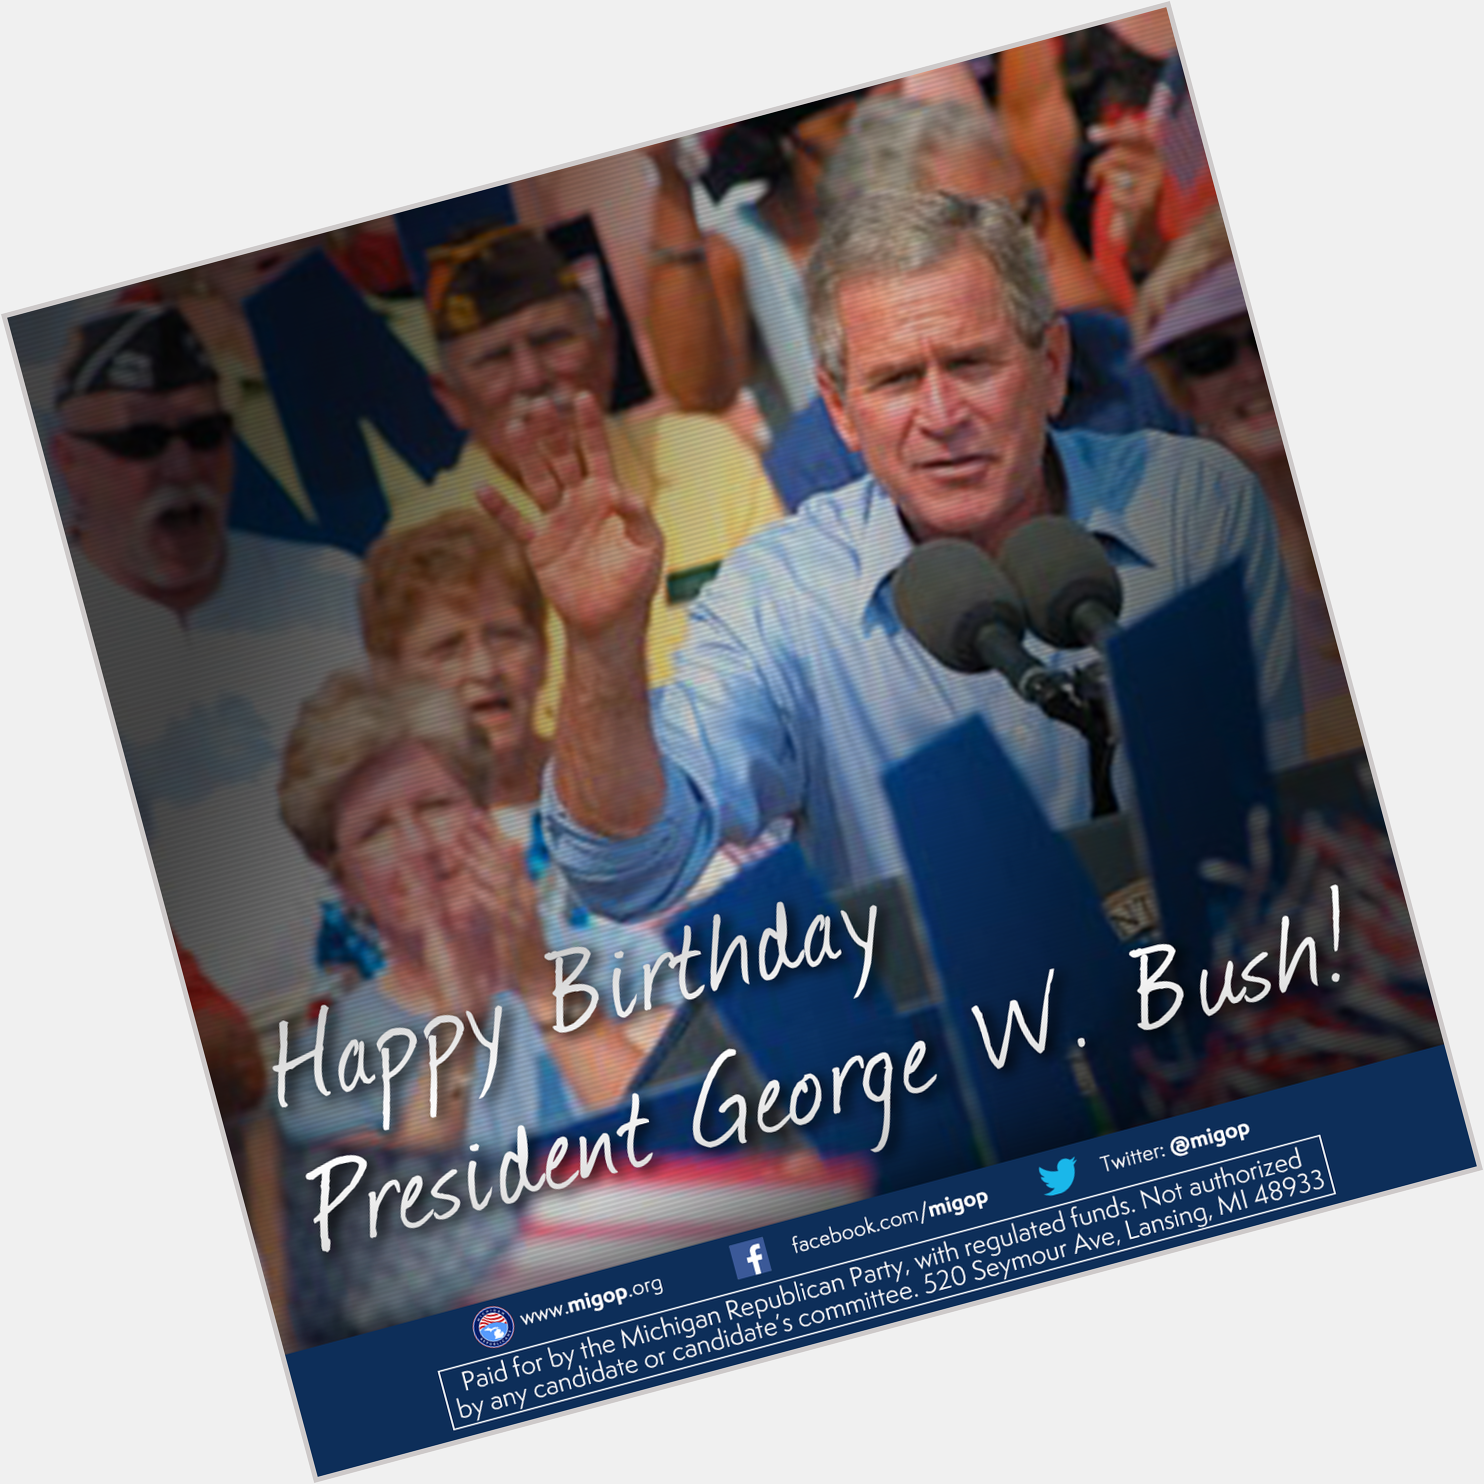 To wish President George W. Bush a happy birthday! 